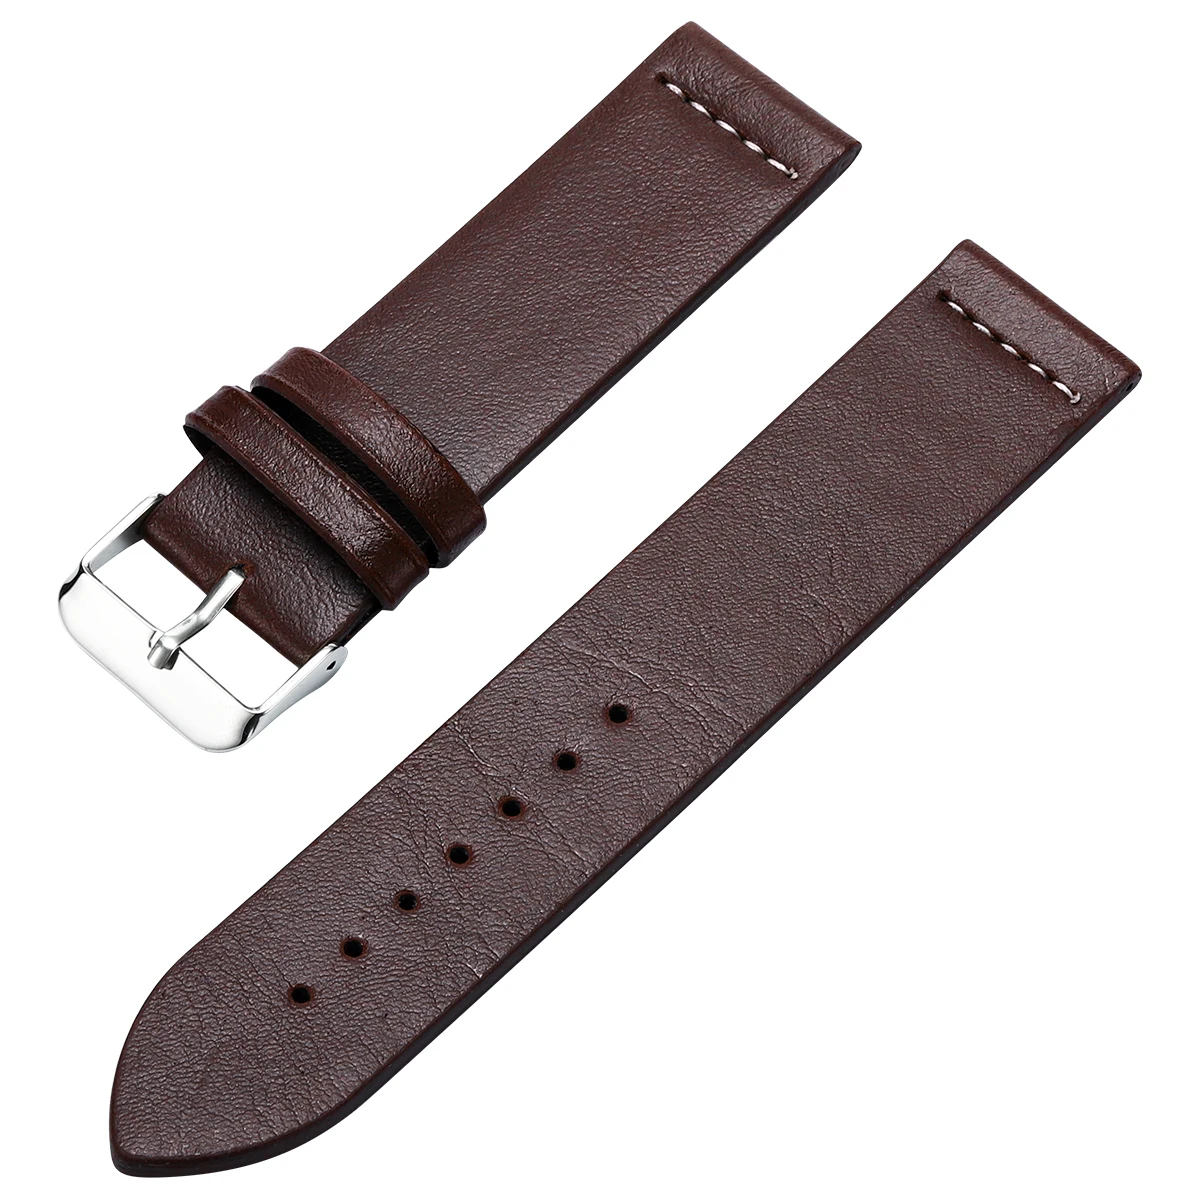 DOM кожаный браслет для мужчин, ремешок для часов 18 мм, 20 мм, 22 мм, ремешок для часов, ремень для мужчин, сменный мужской ремешок для часов, аксессуары для часов, браслеты